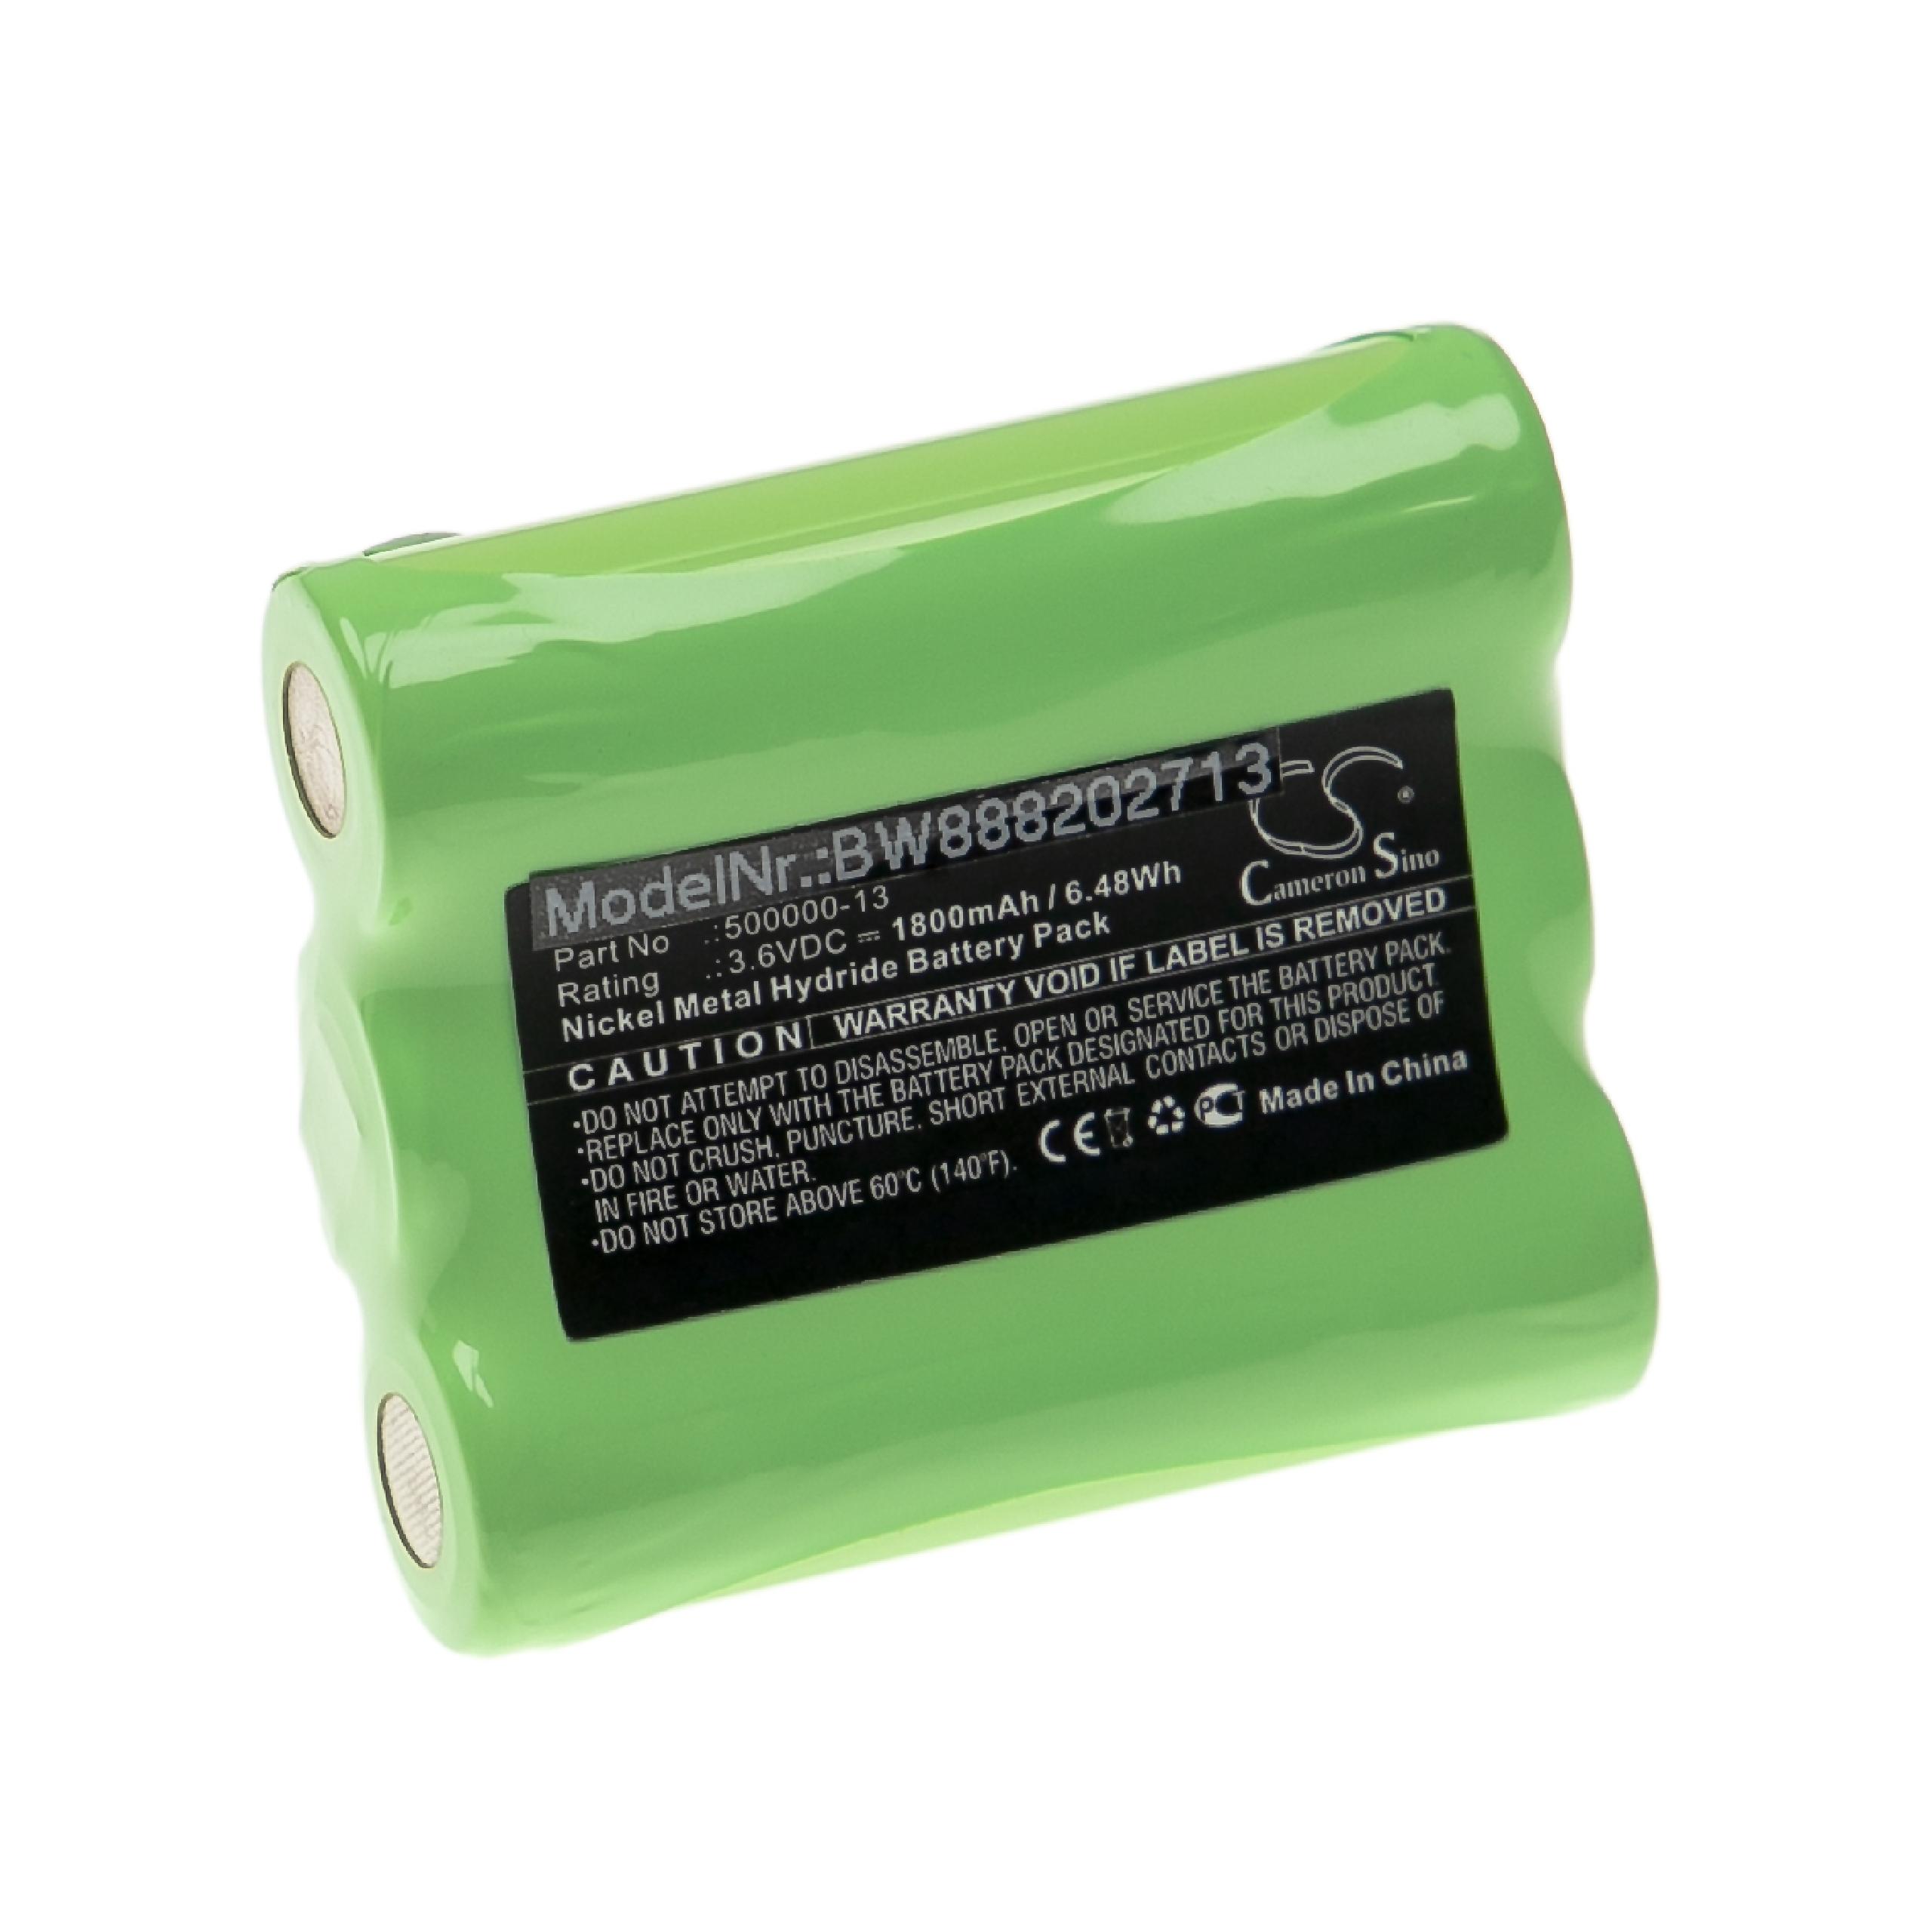 Batterie remplace Linienlaser 500000-13 pour outil de mesure - 1800mAh 3,6V NiMH